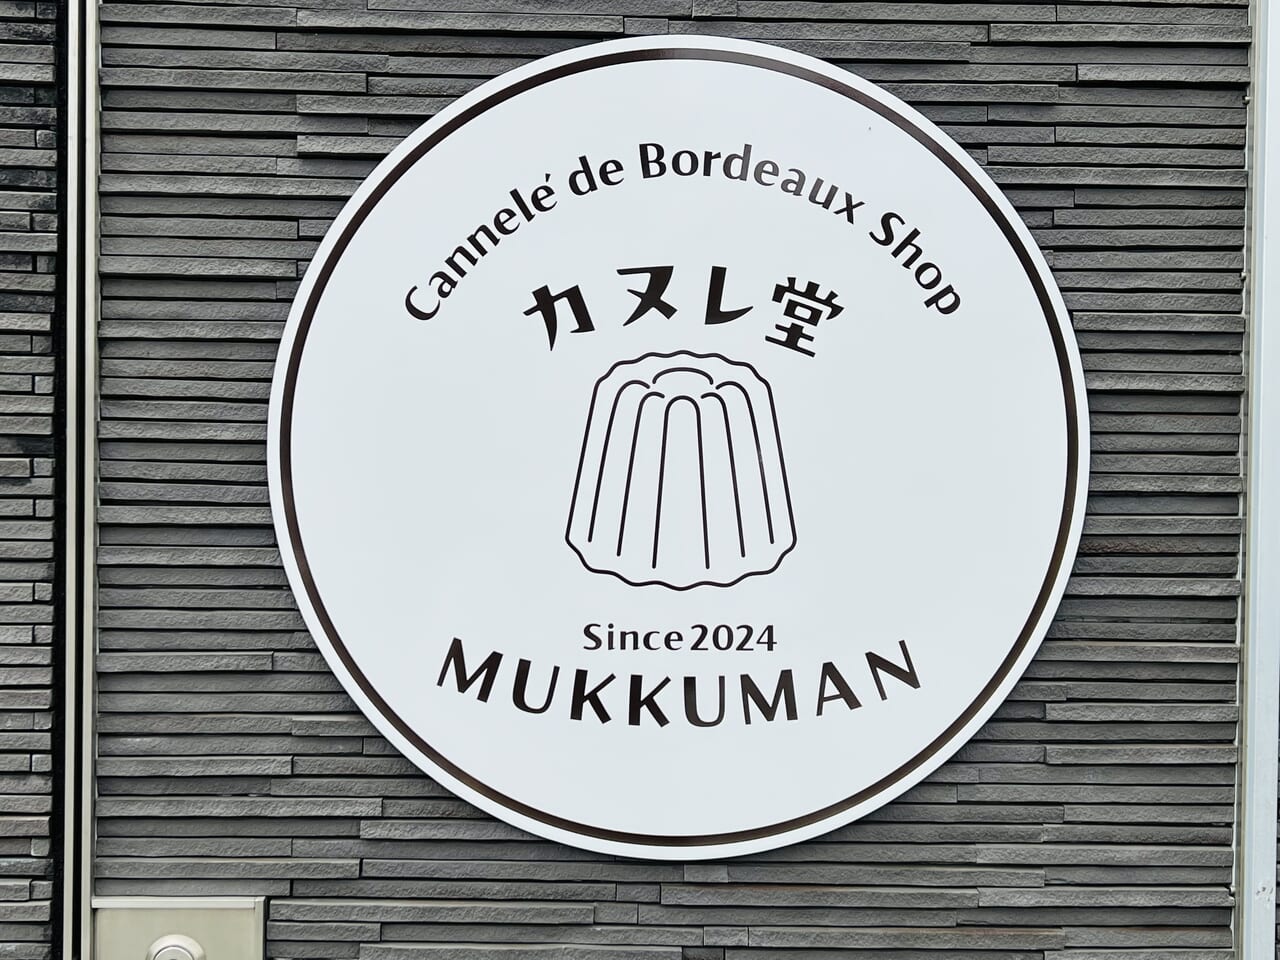 2024年4月にオープンする予定の「カヌレ堂 MUKKUMAN」の看板